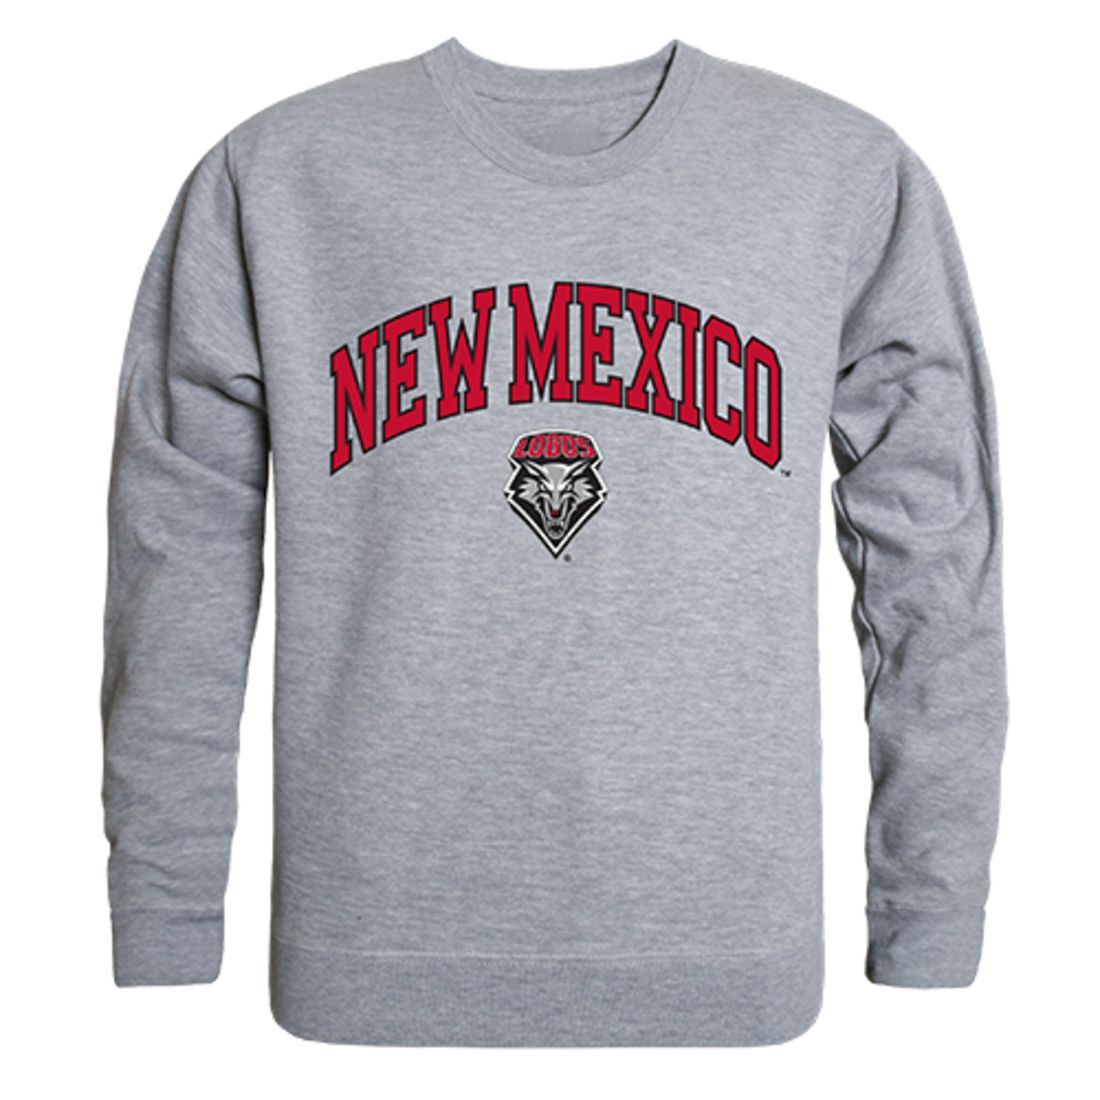 UNM University of New Mexico Campus Crewneck Pullover Sweatshirt Sweater Heather Grey-Campus-Wardrobe